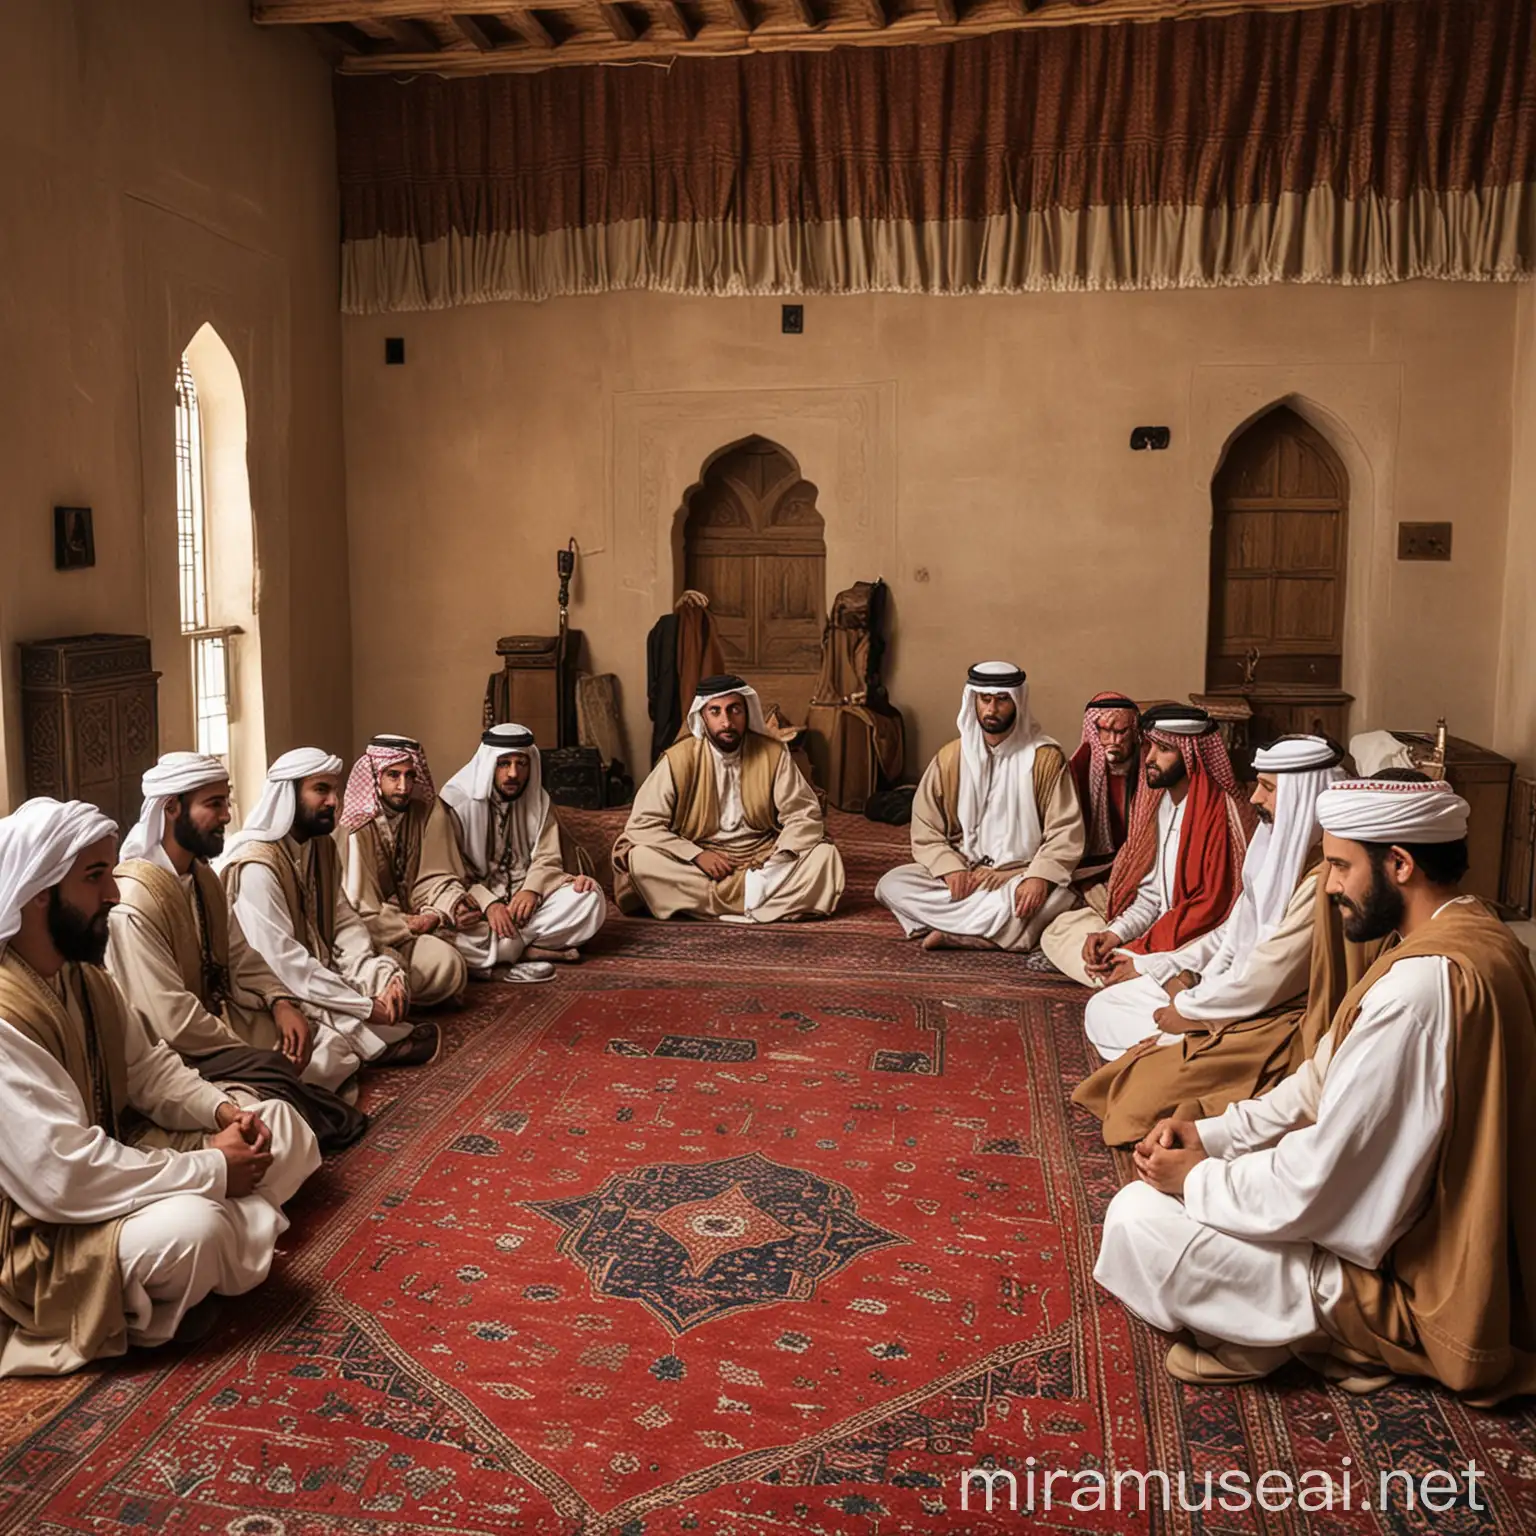 600ad arabian meeting in group inside room
